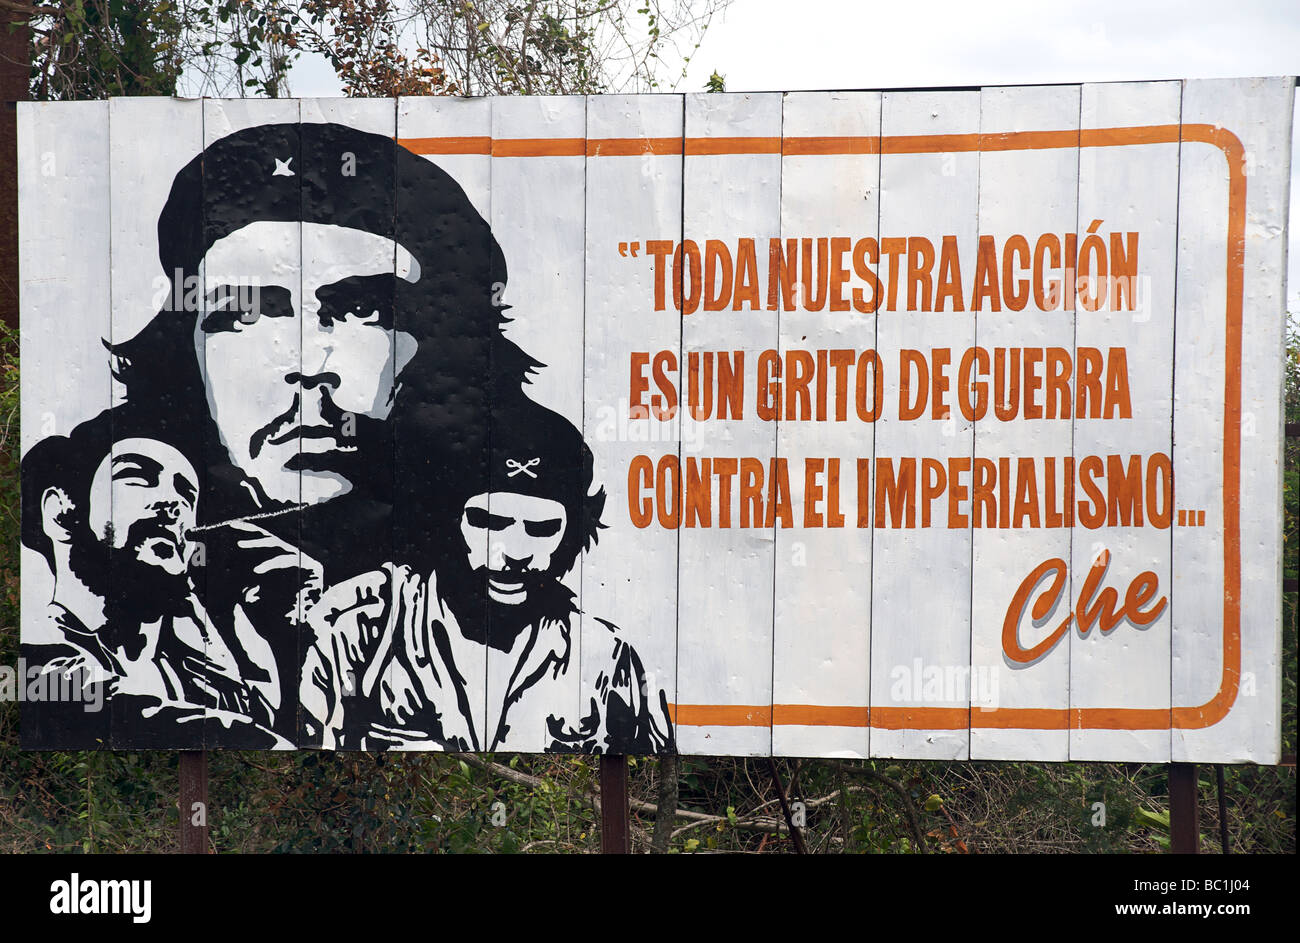 Kubanische Plakatwand mit Zitat von Che Guevara. TONO BUESTRA ACCION ES UN GRITO DE GUERRA CONTRA EL IMPERIALISMO. CHE. KUBA Stockfoto